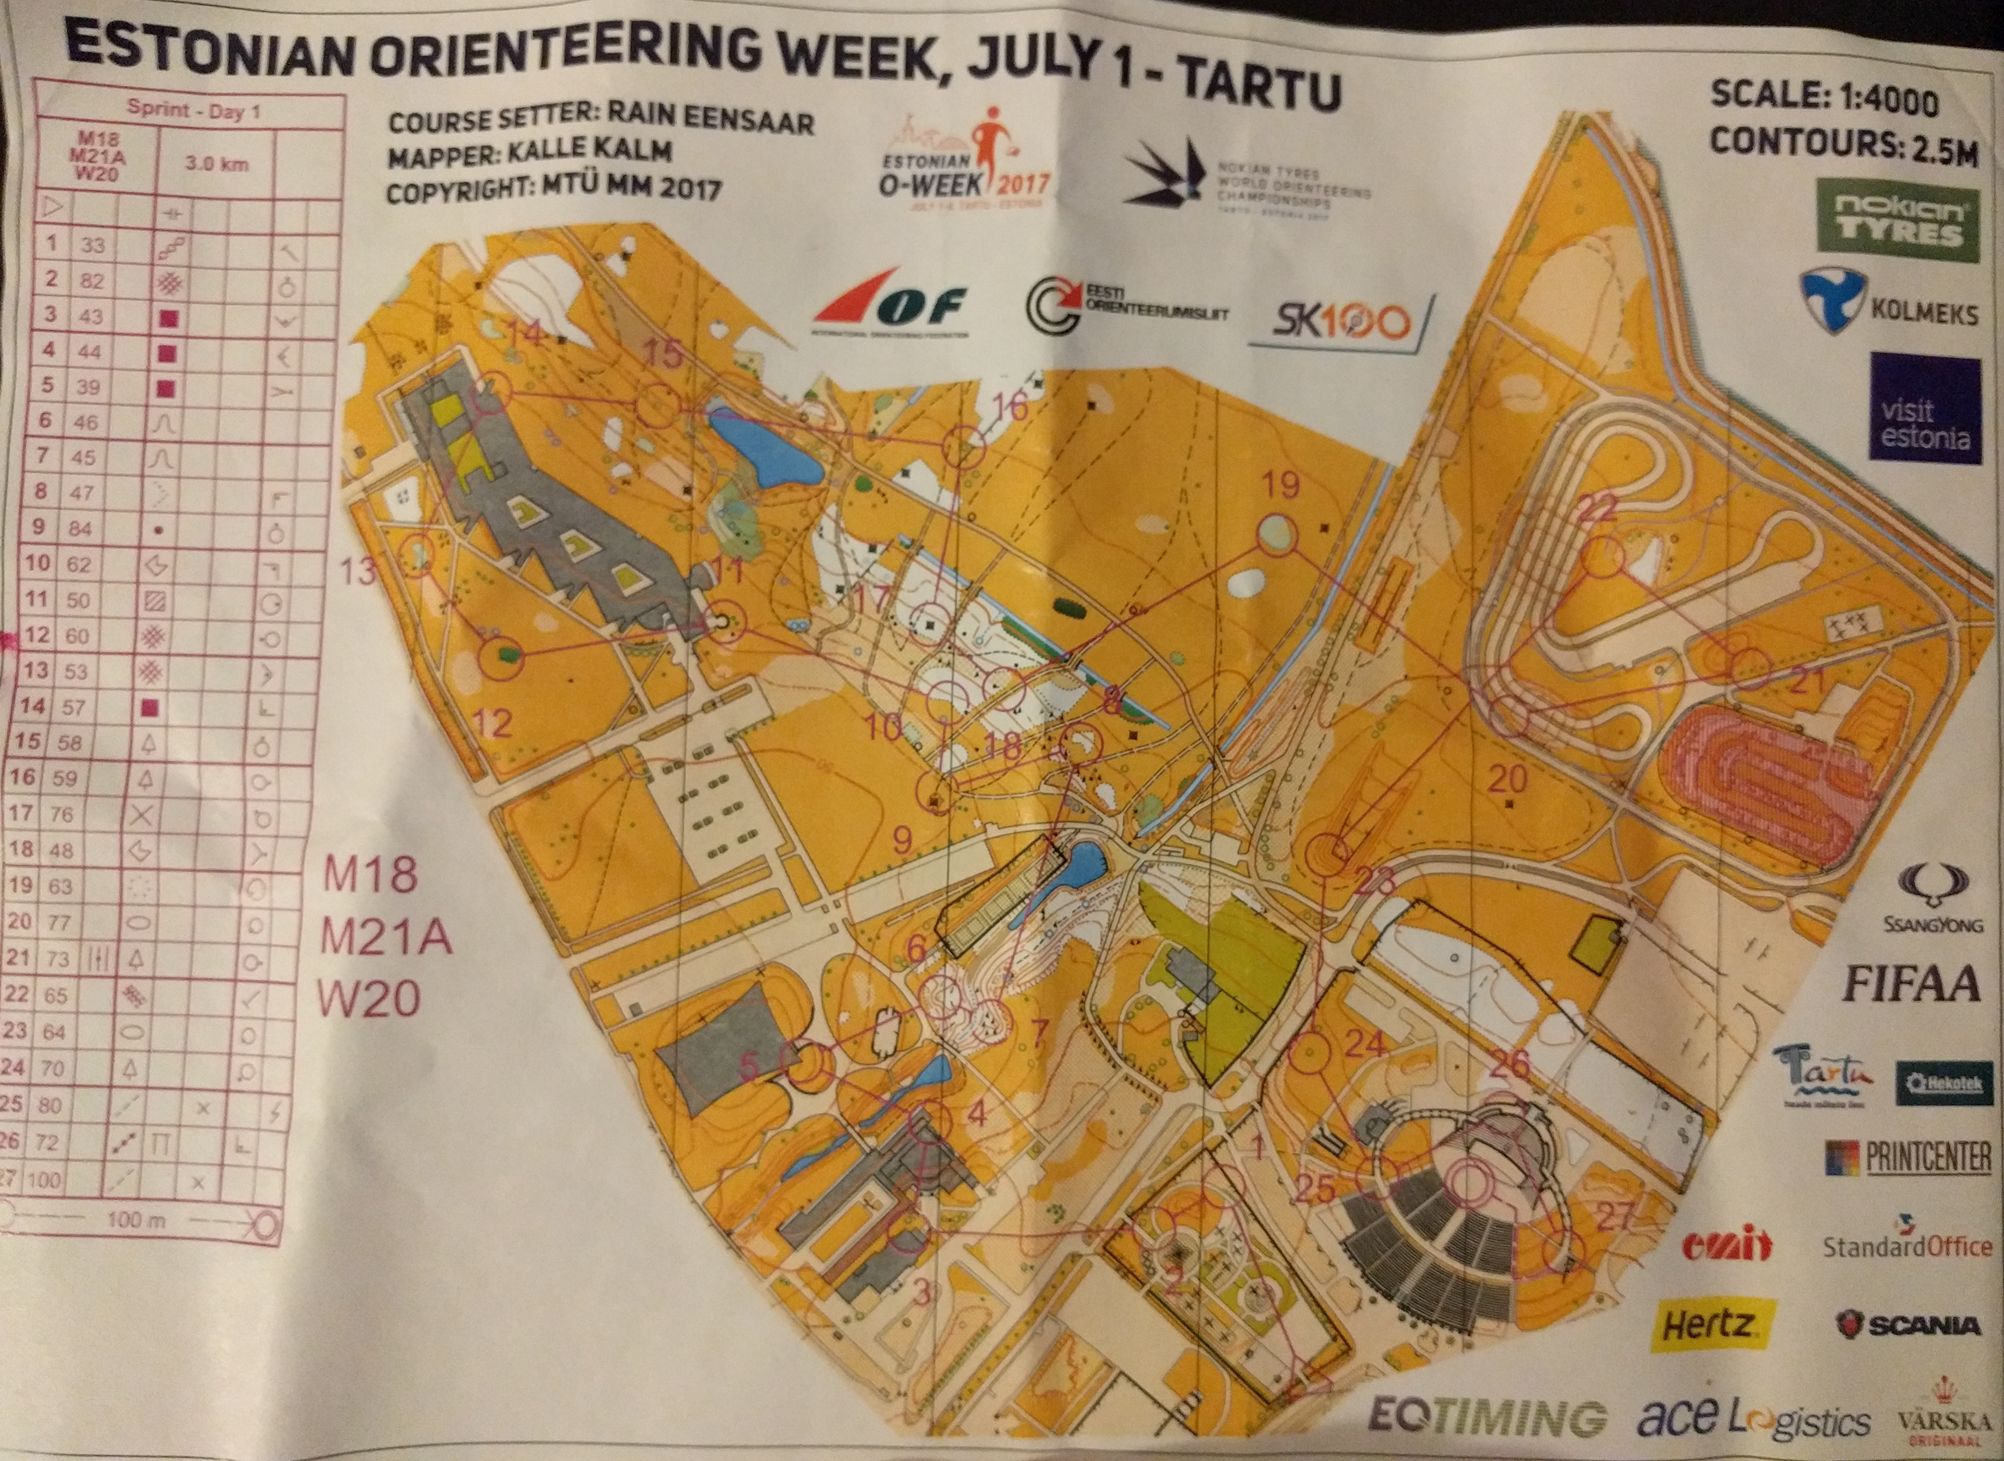 Estonian orienteering week 2017 (01/07/2017)